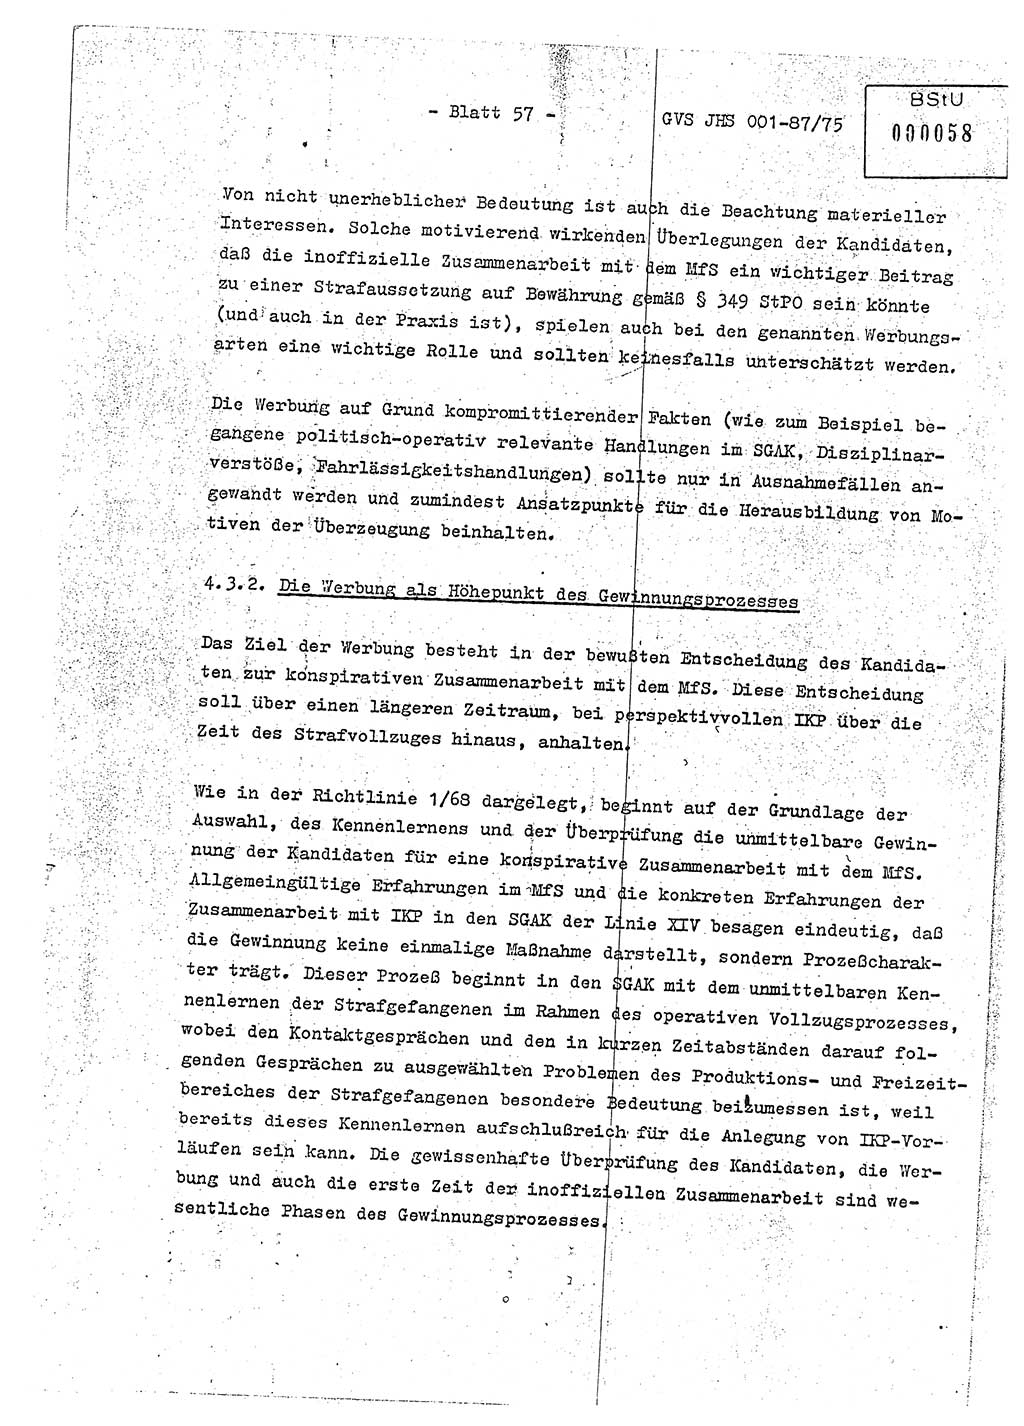 Diplomarbeit Hauptmann Volkmar Heinz (Abt. ⅩⅣ), Oberleutnant Lothar Rüdiger (BV Lpz. Abt. Ⅺ), Ministerium für Staatssicherheit (MfS) [Deutsche Demokratische Republik (DDR)], Juristische Hochschule (JHS), Geheime Verschlußsache (GVS) o001-87/75, Potsdam 1975, Seite 57 (Dipl.-Arb. MfS DDR JHS GVS o001-87/75 1975, S. 57)